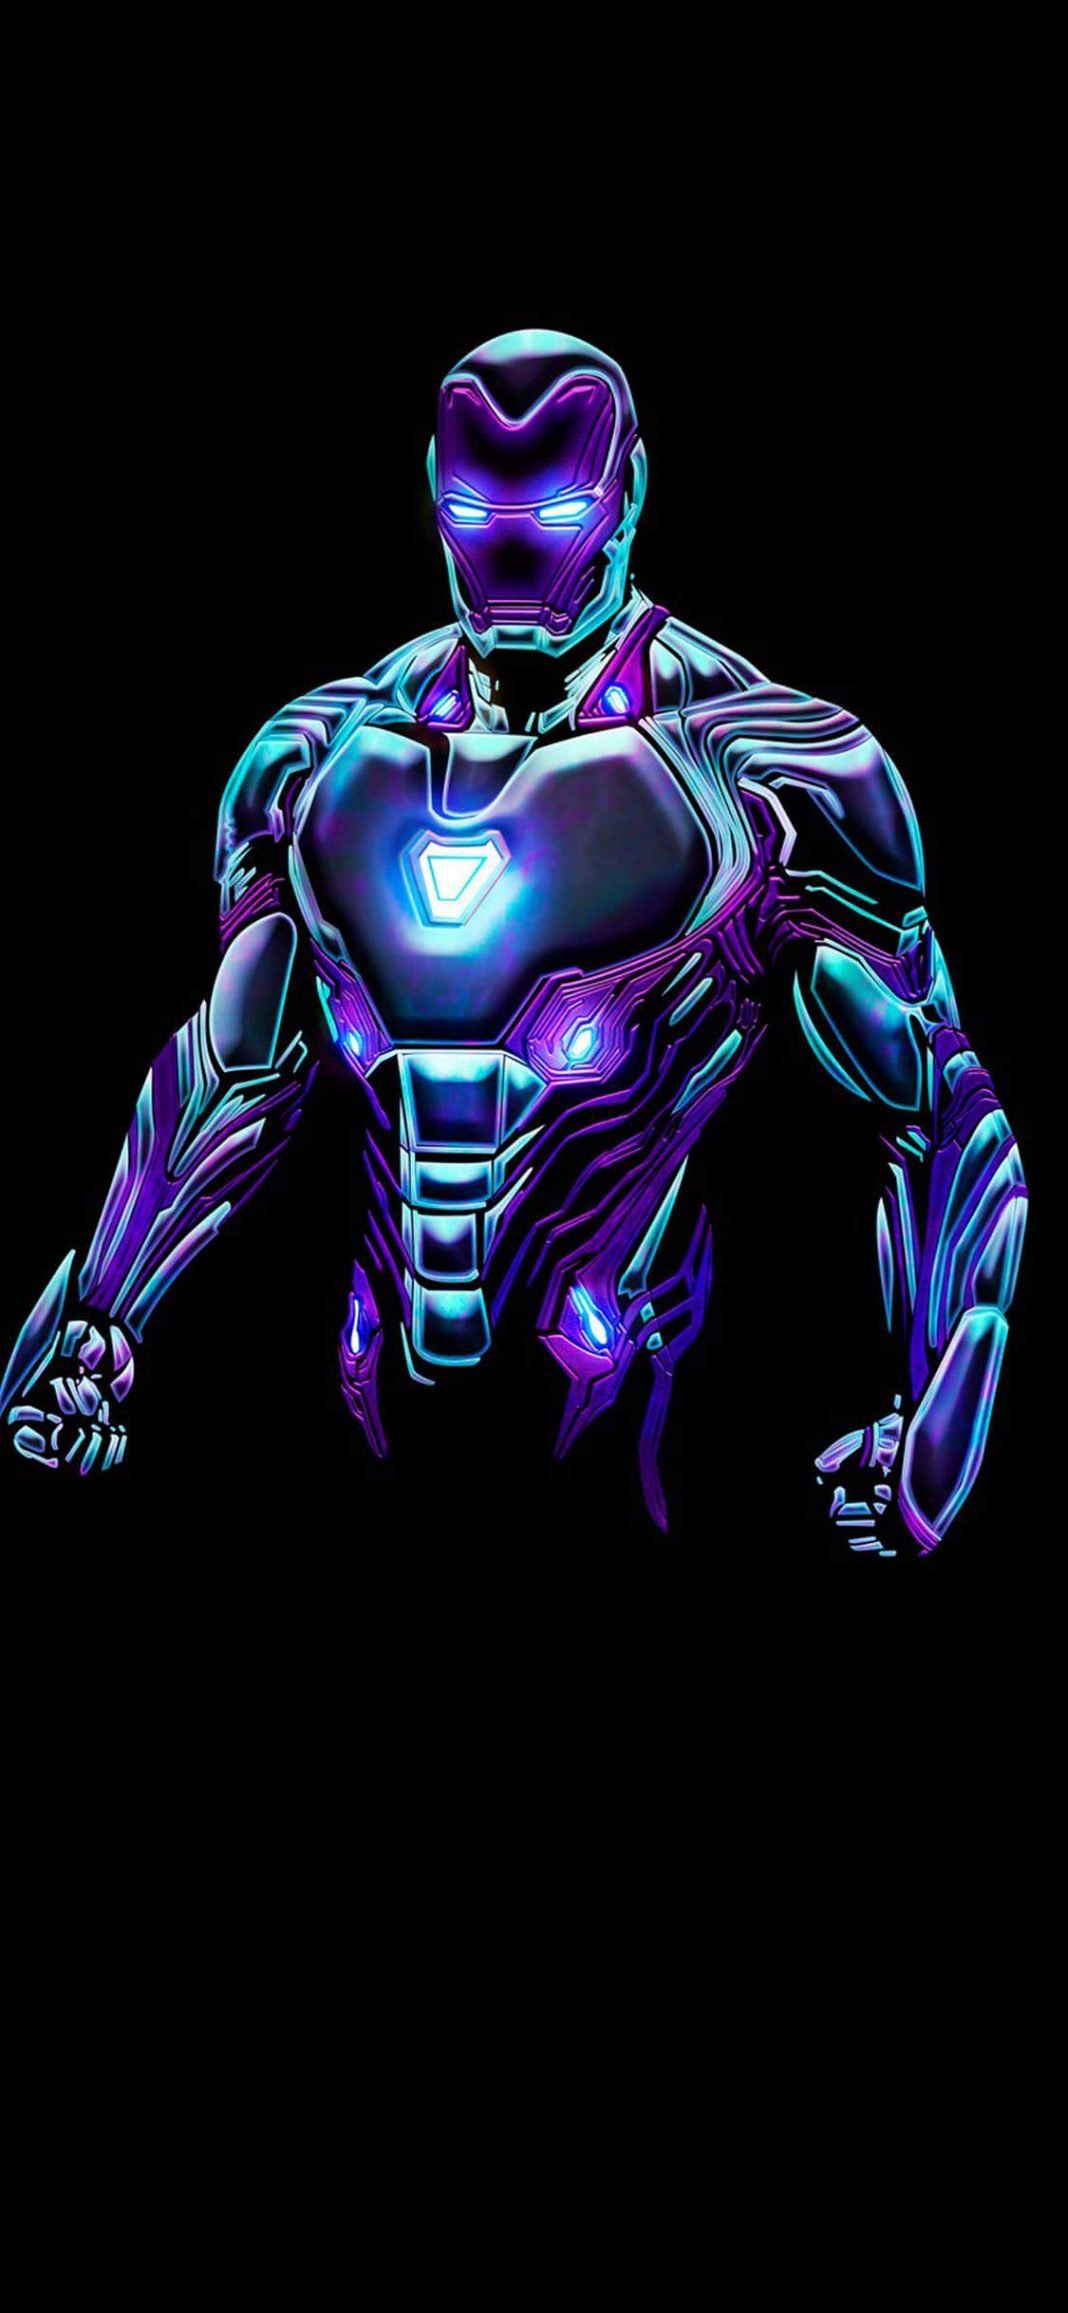 Best Iron Man iPhone Wallpaper 2019. Iron man HD wallpaper, Iron man art, Iron man wallpaper